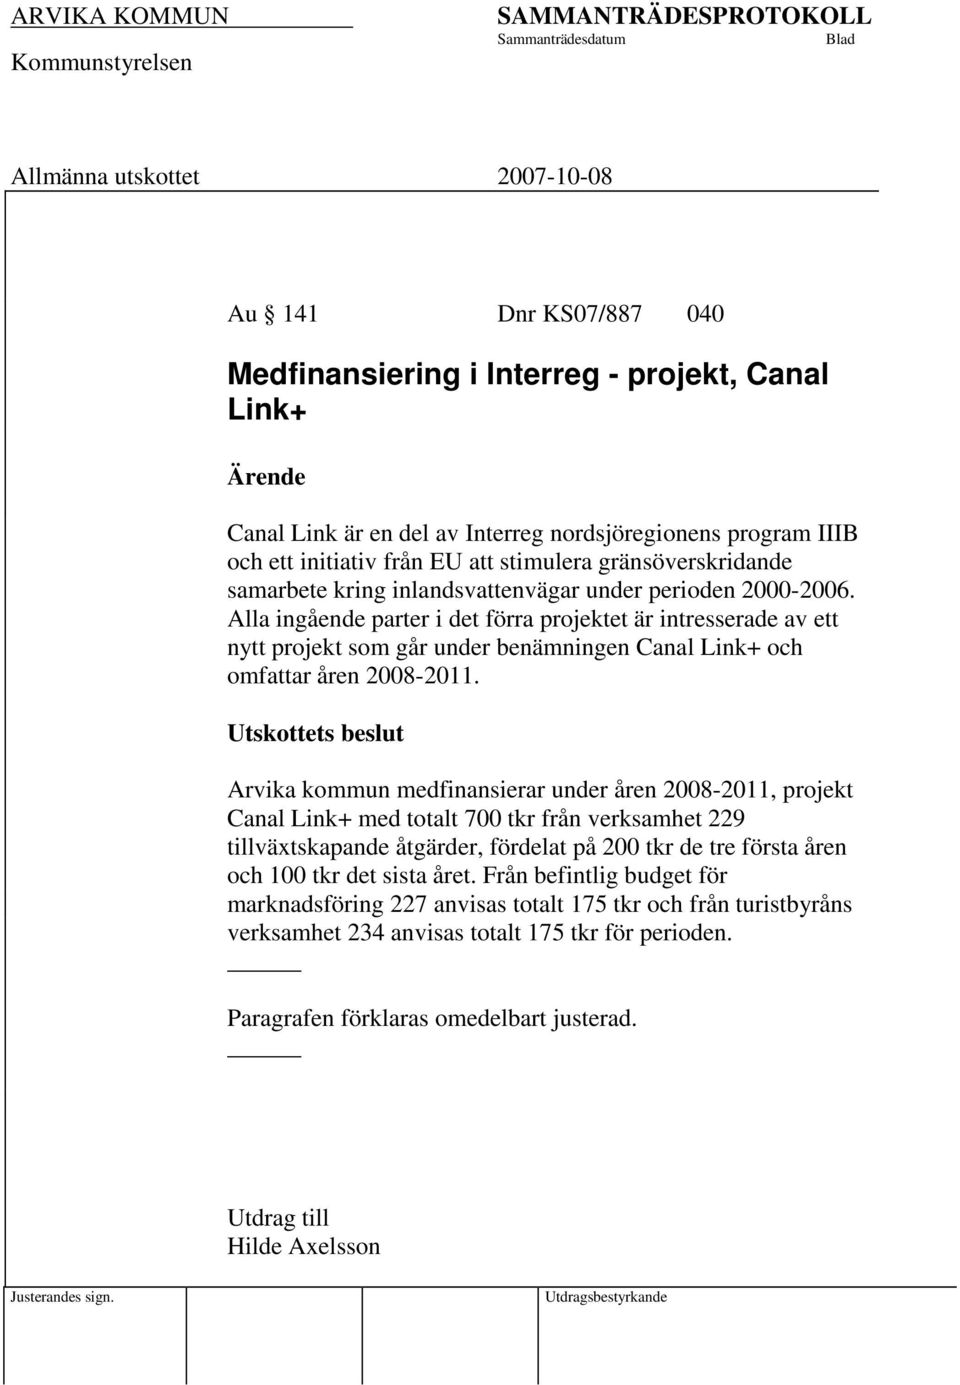 Alla ingående parter i det förra projektet är intresserade av ett nytt projekt som går under benämningen Canal Link+ och omfattar åren 2008-2011.